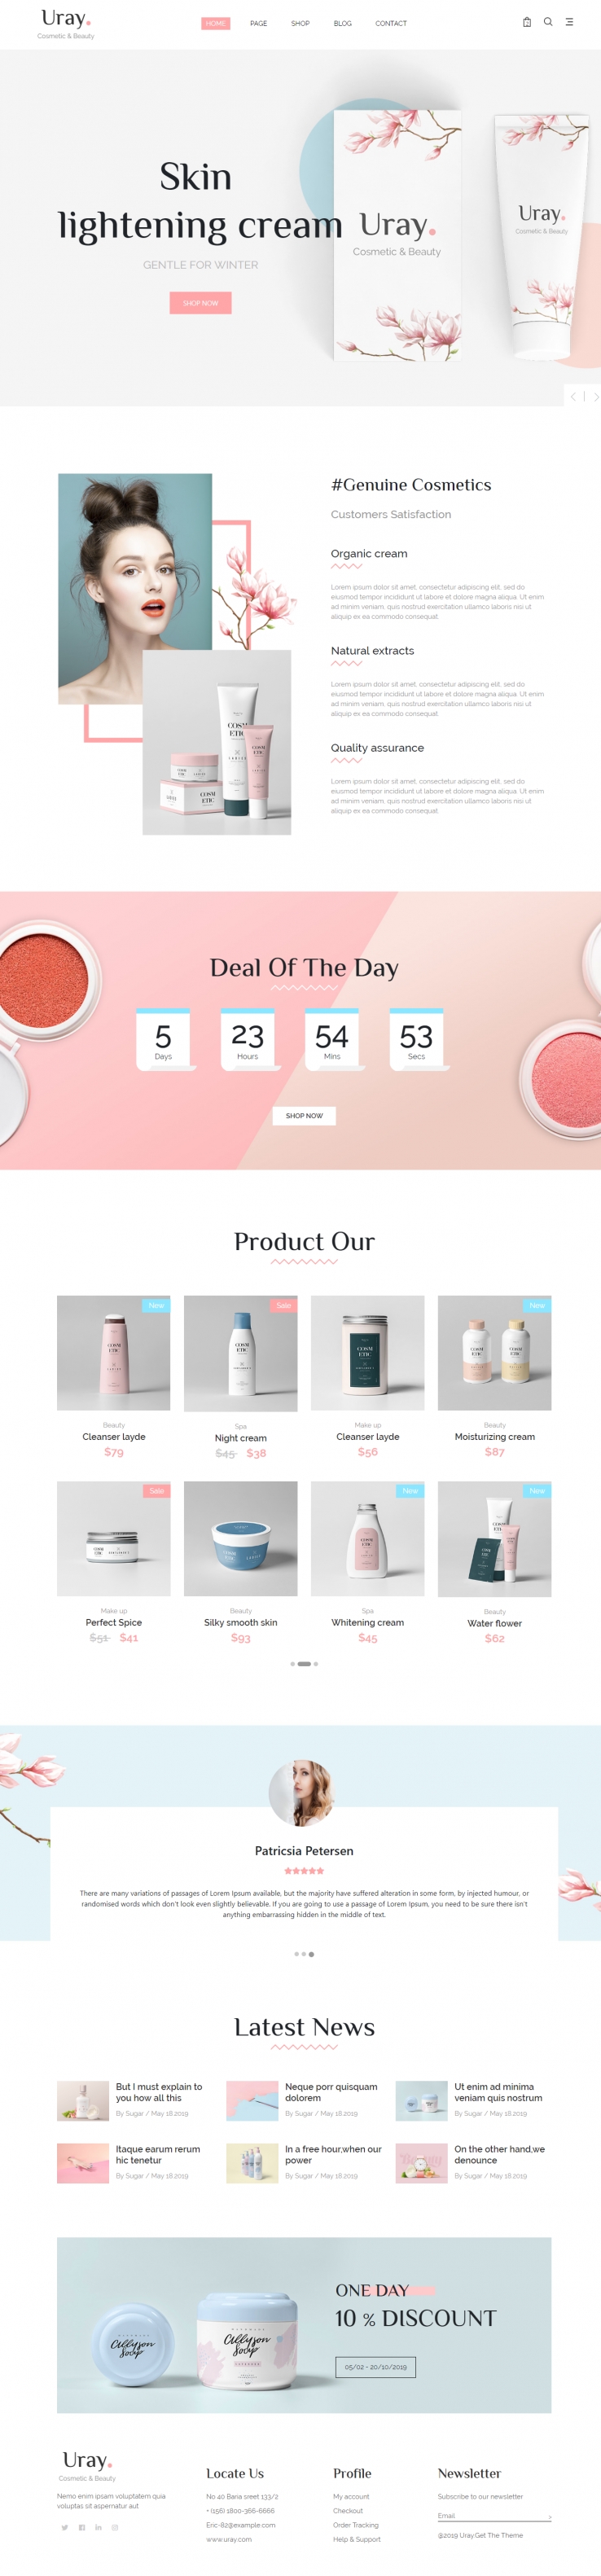 粉色欧美风格的化妆品美容店铺整站网站源码下载